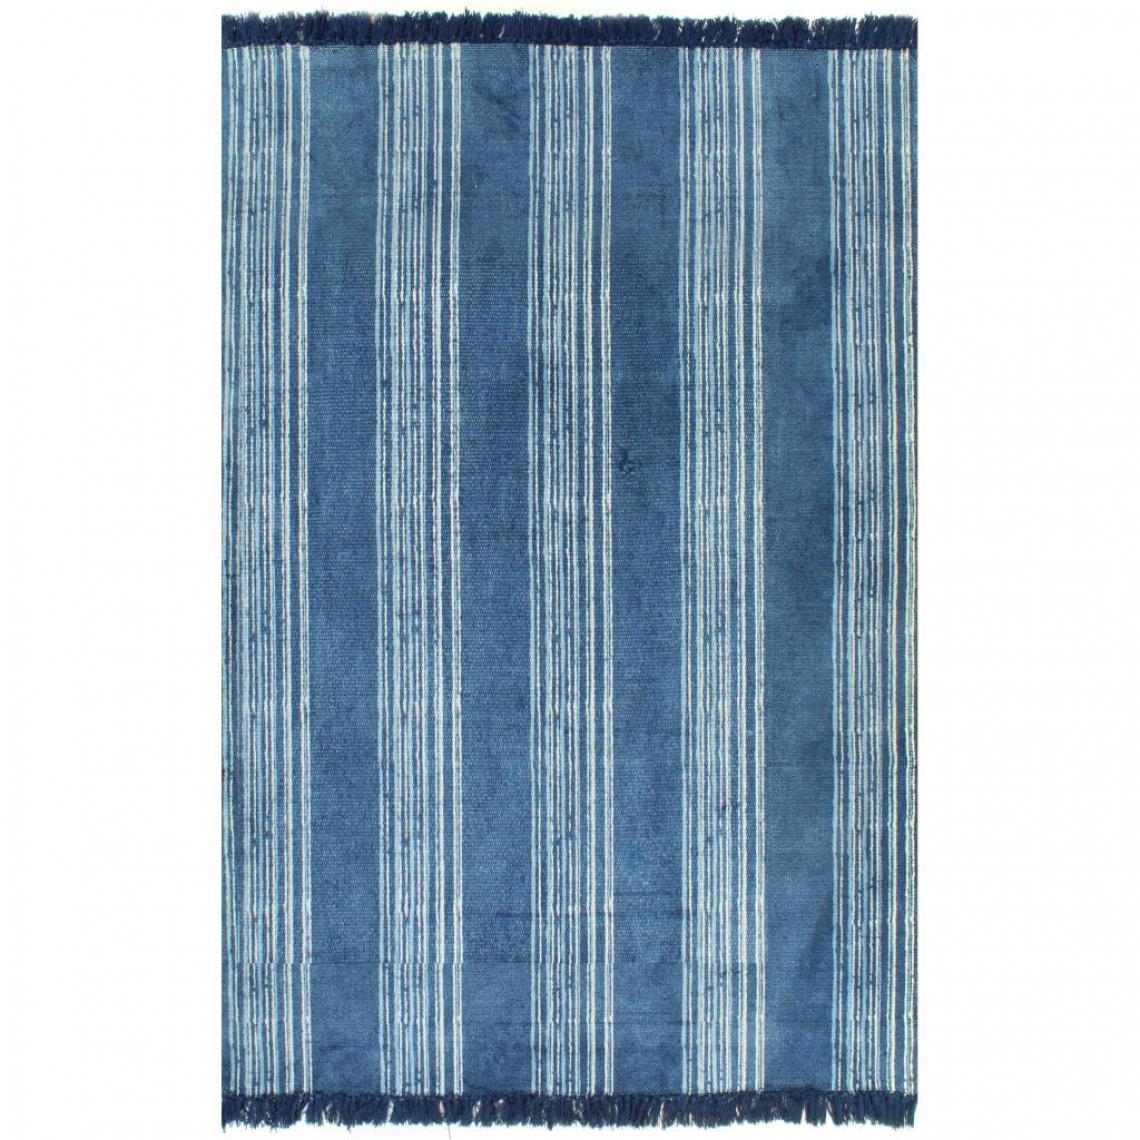 Chunhelife - Tapis Kilim Coton 160 x 230 cm avec motif Bleu - Tapis